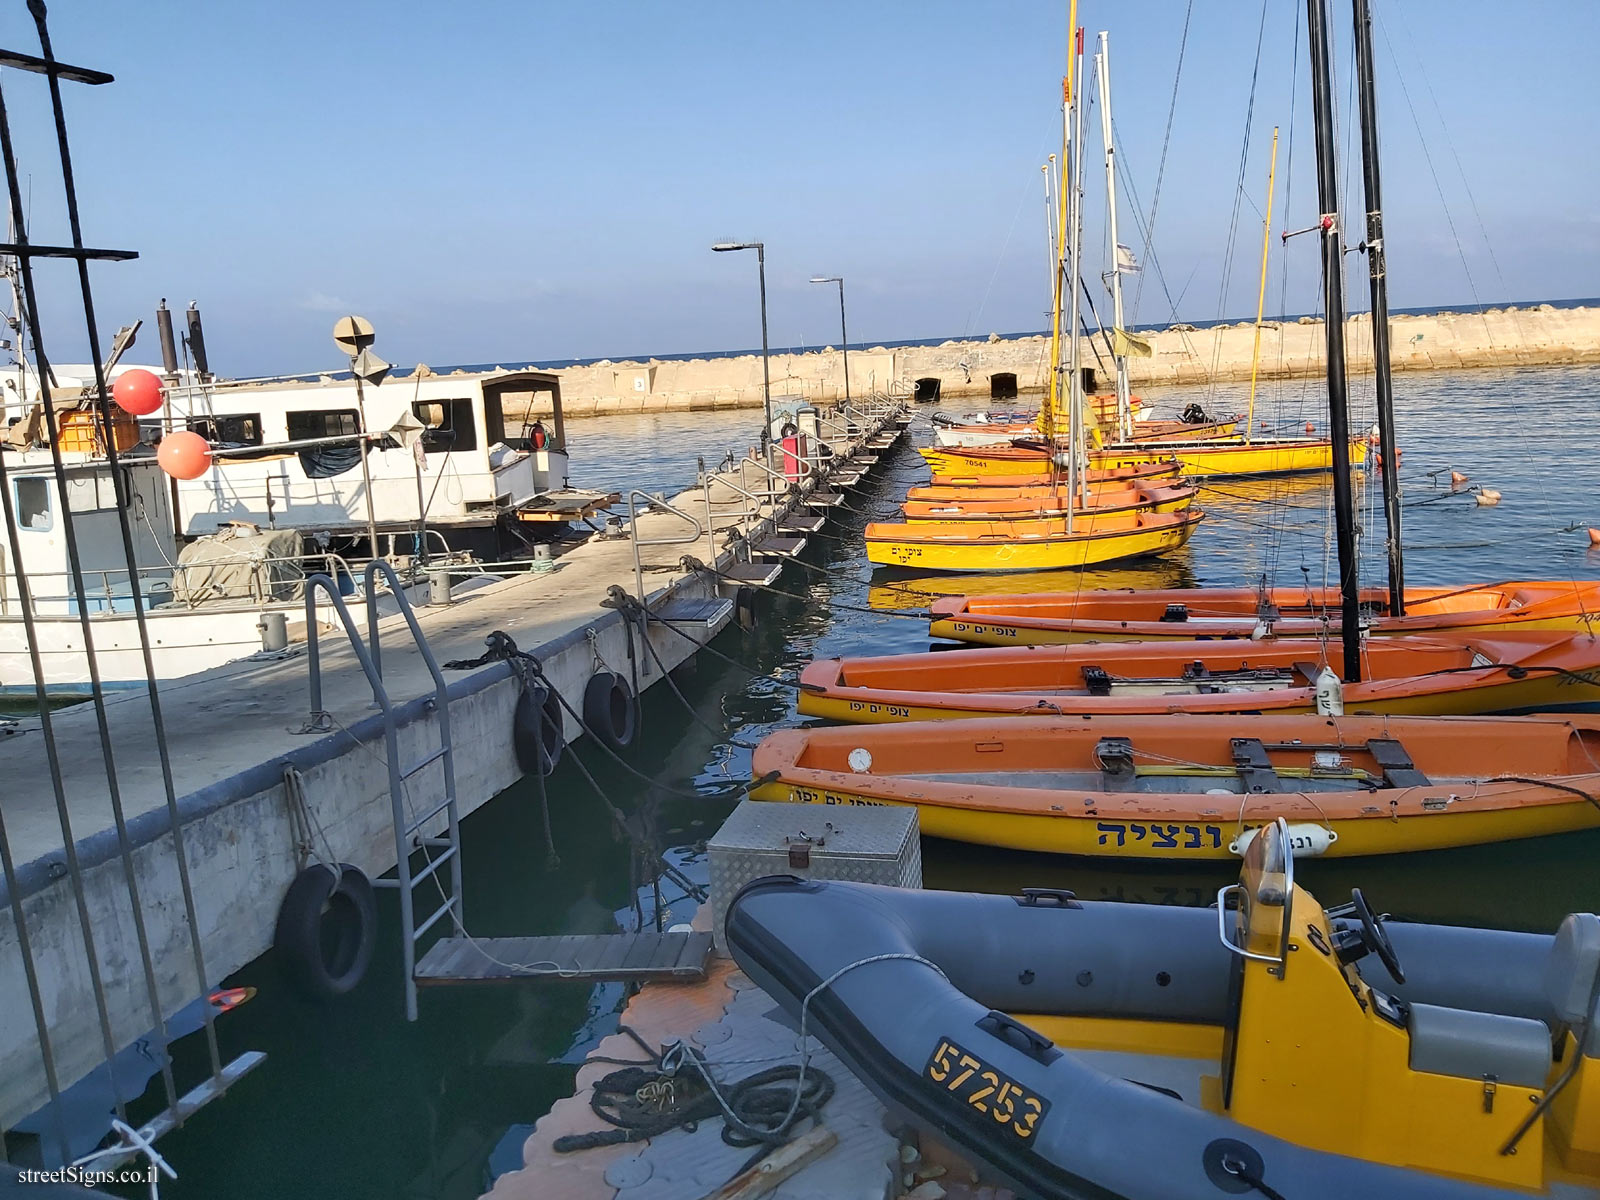 Old Jaffa - The Jaffa Port